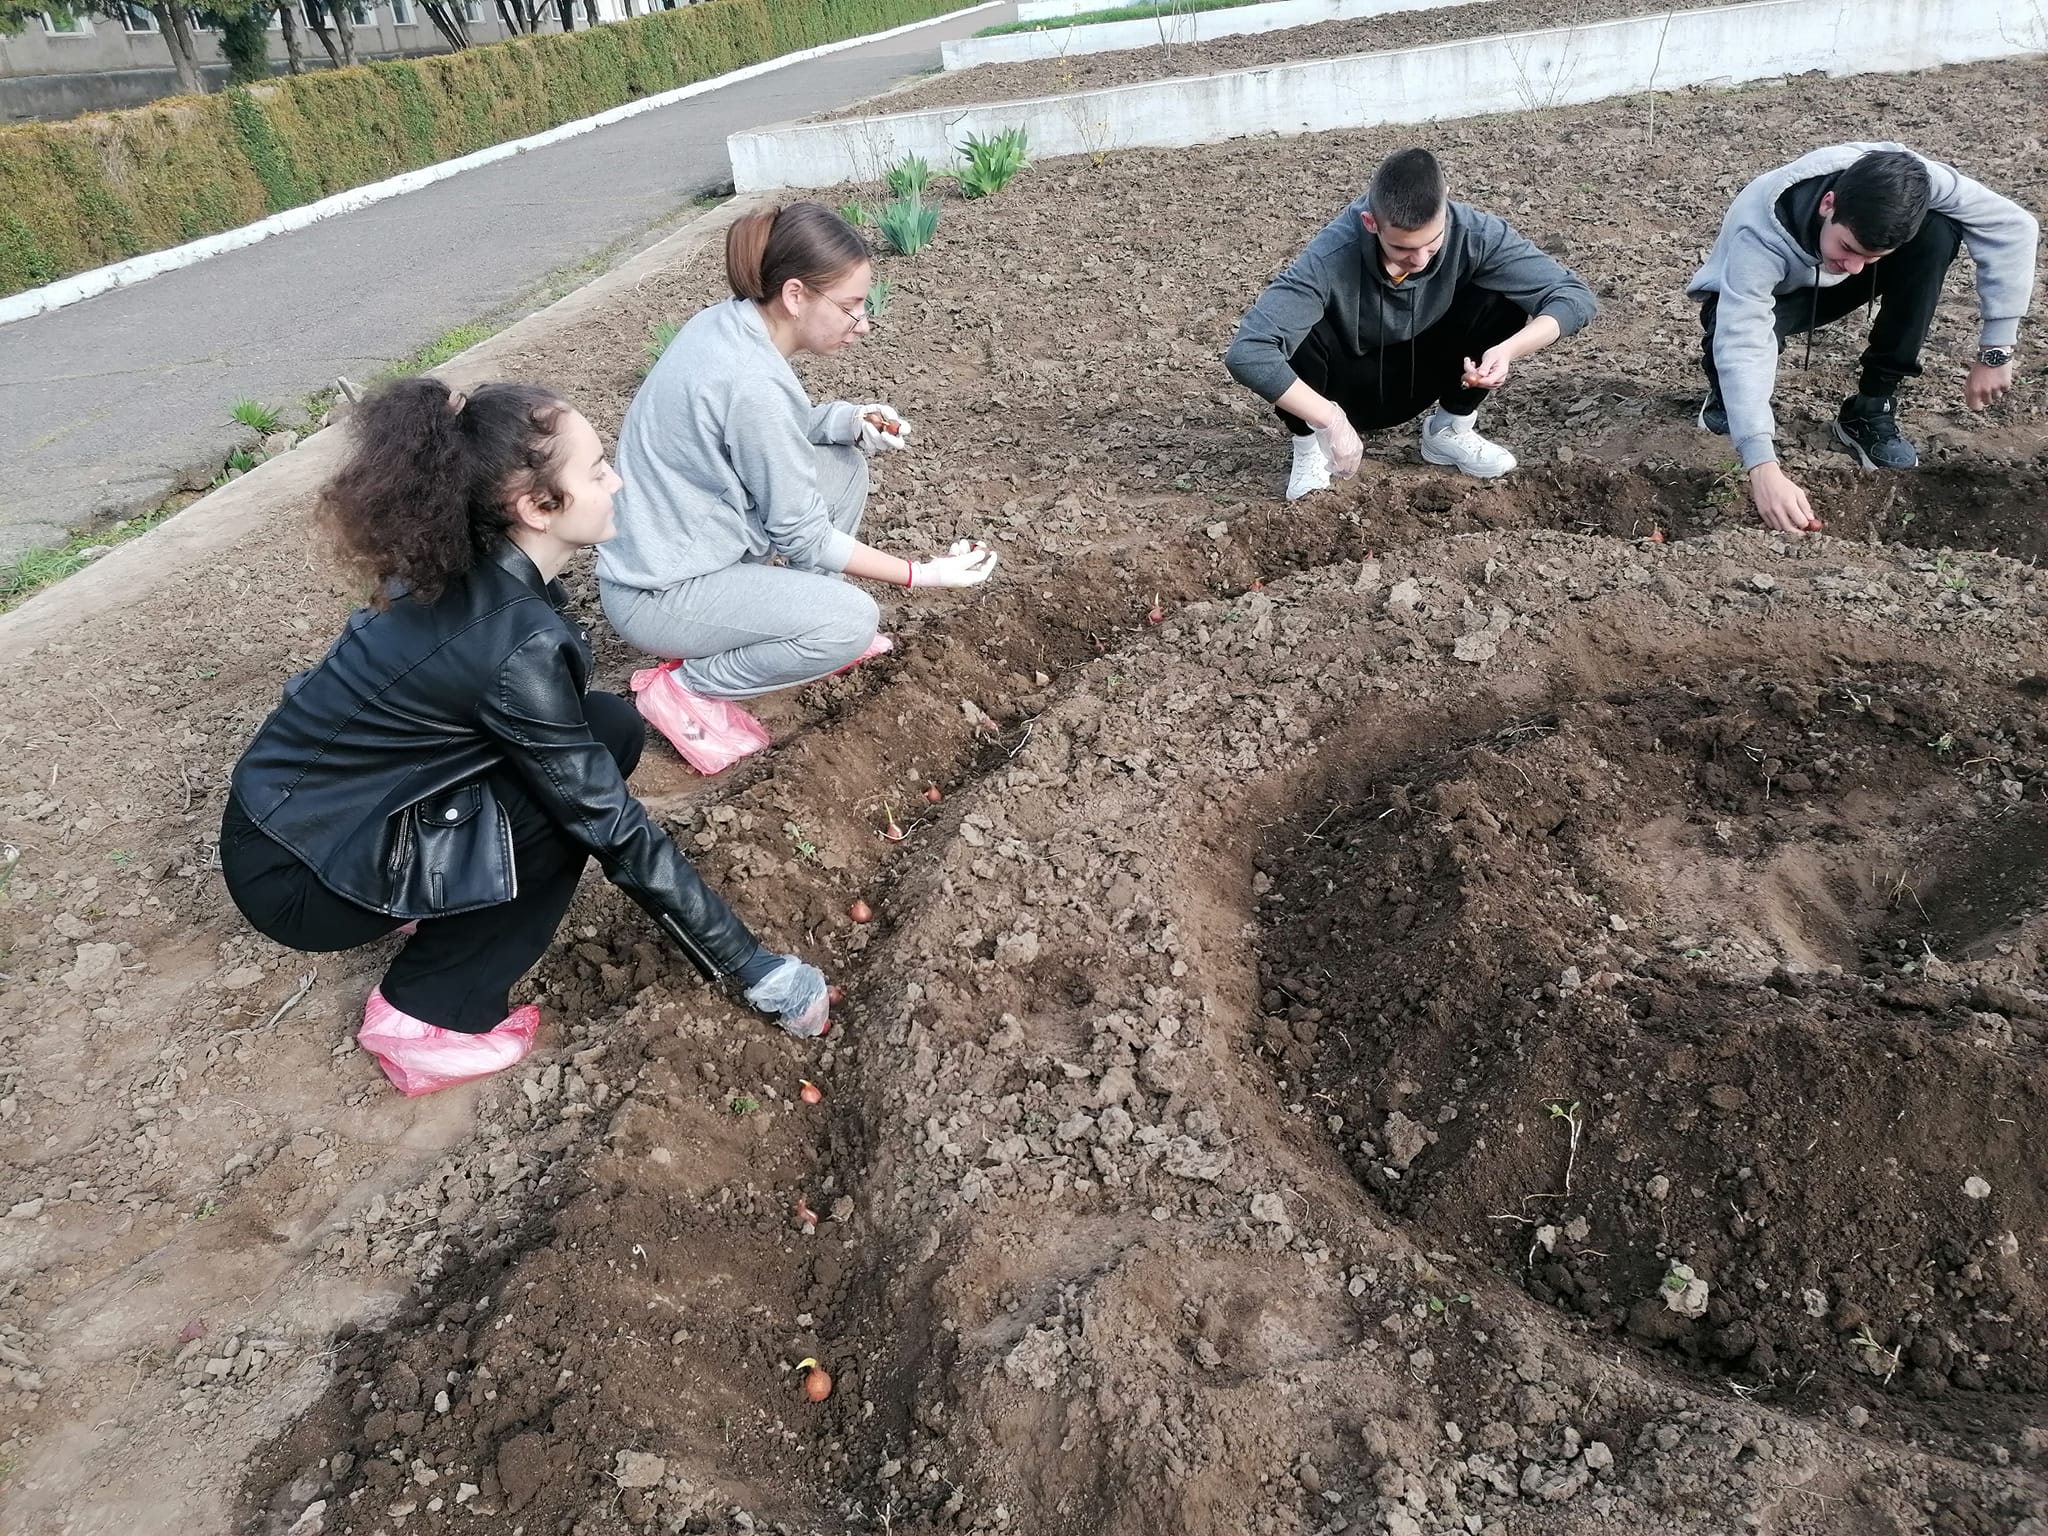 В селе Суворовской общины будущие выпускники лицея внесли свой вклад в высадке аллеи Победы